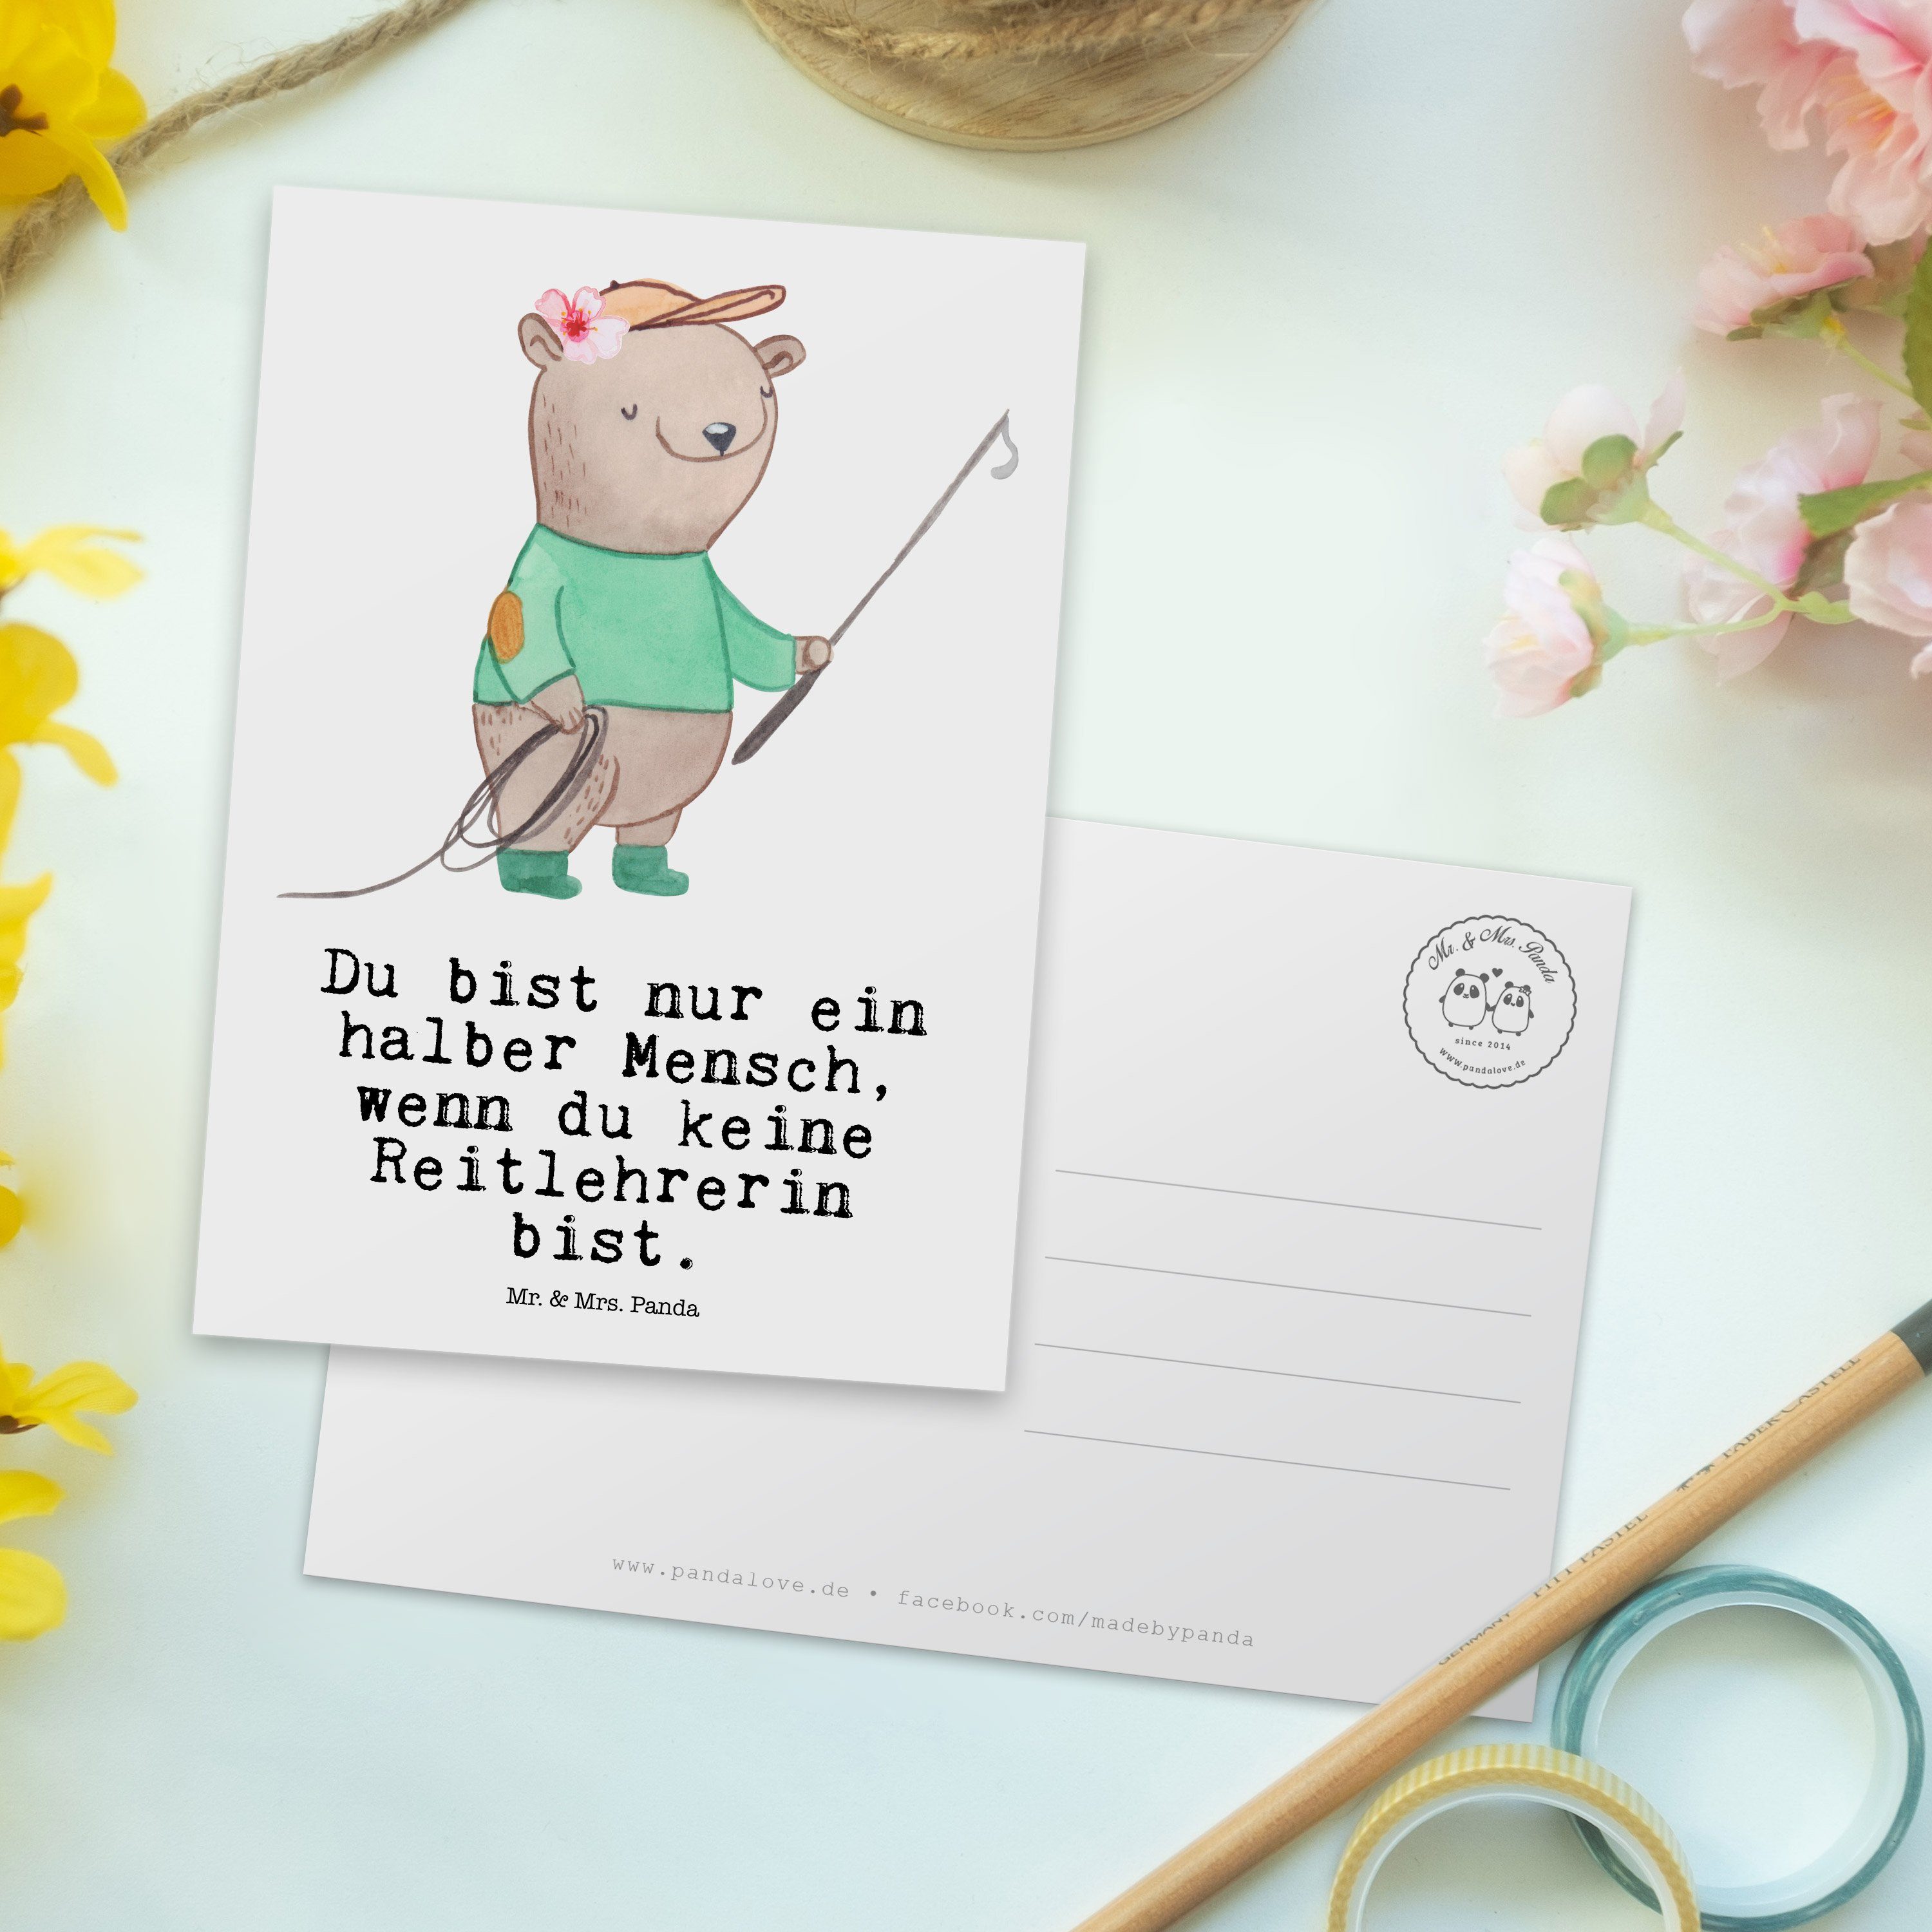 Mr. & Mrs. Panda Postkarte Abschied - Geschenk, Ausbildung, Karte, - mit Weiß Reitlehrerin Herz